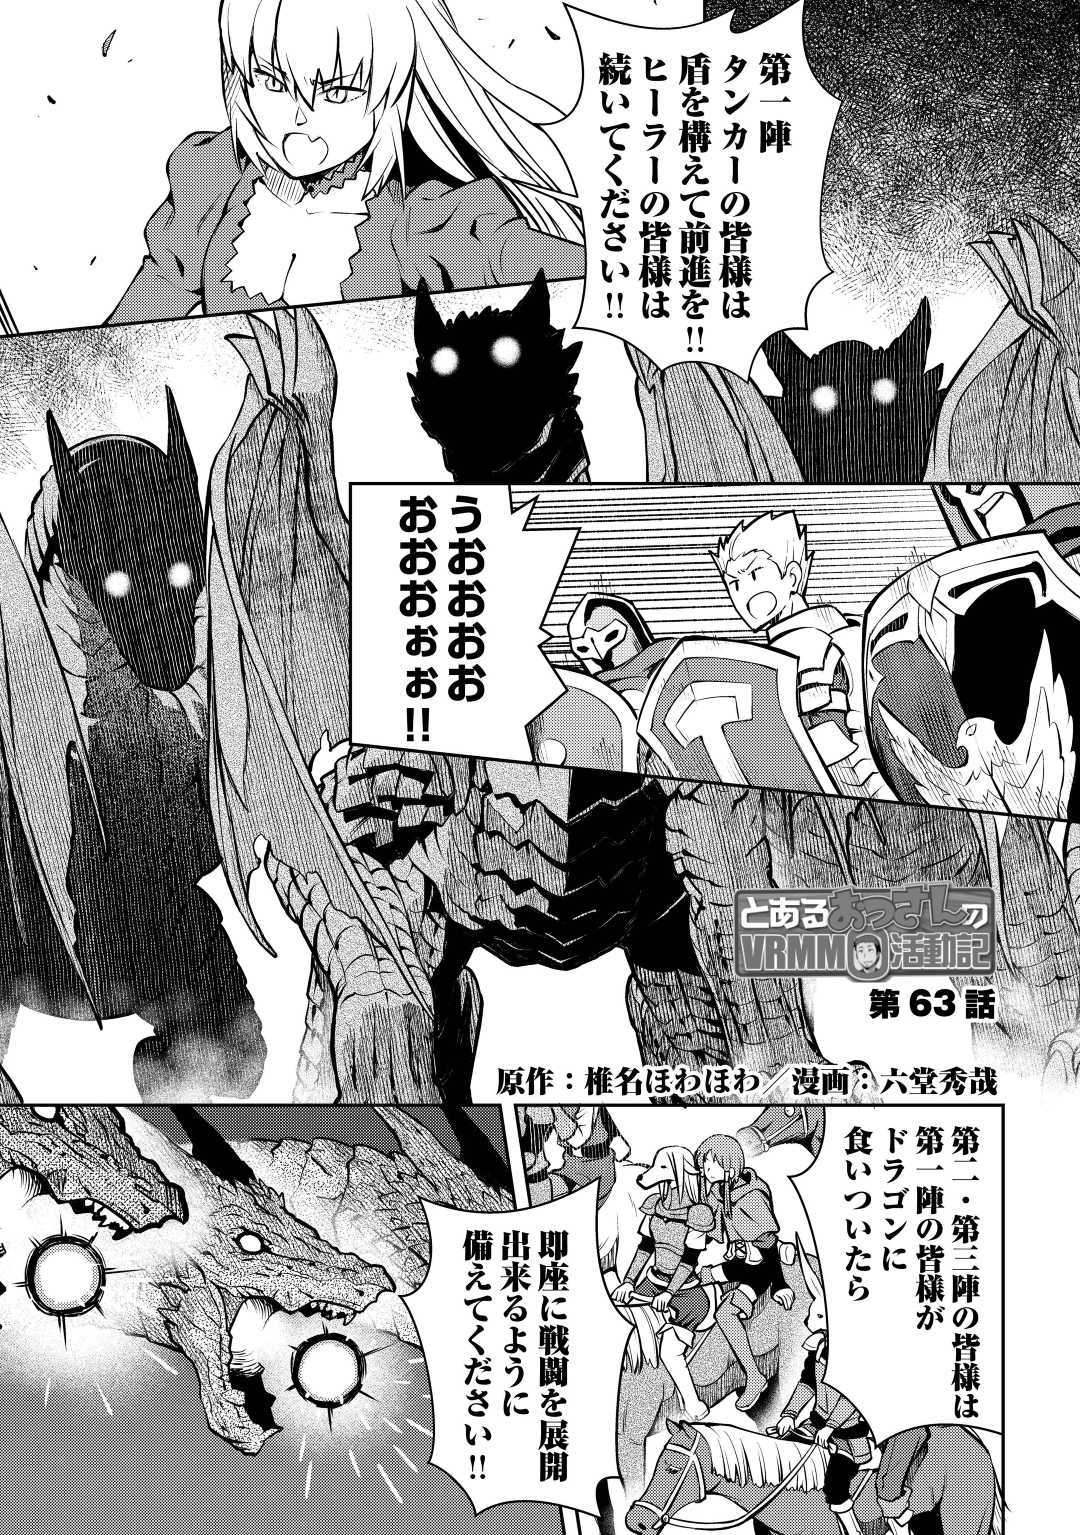 Toaru Ossan no VRMMO Katsudouki - Chapter 63 - Page 1